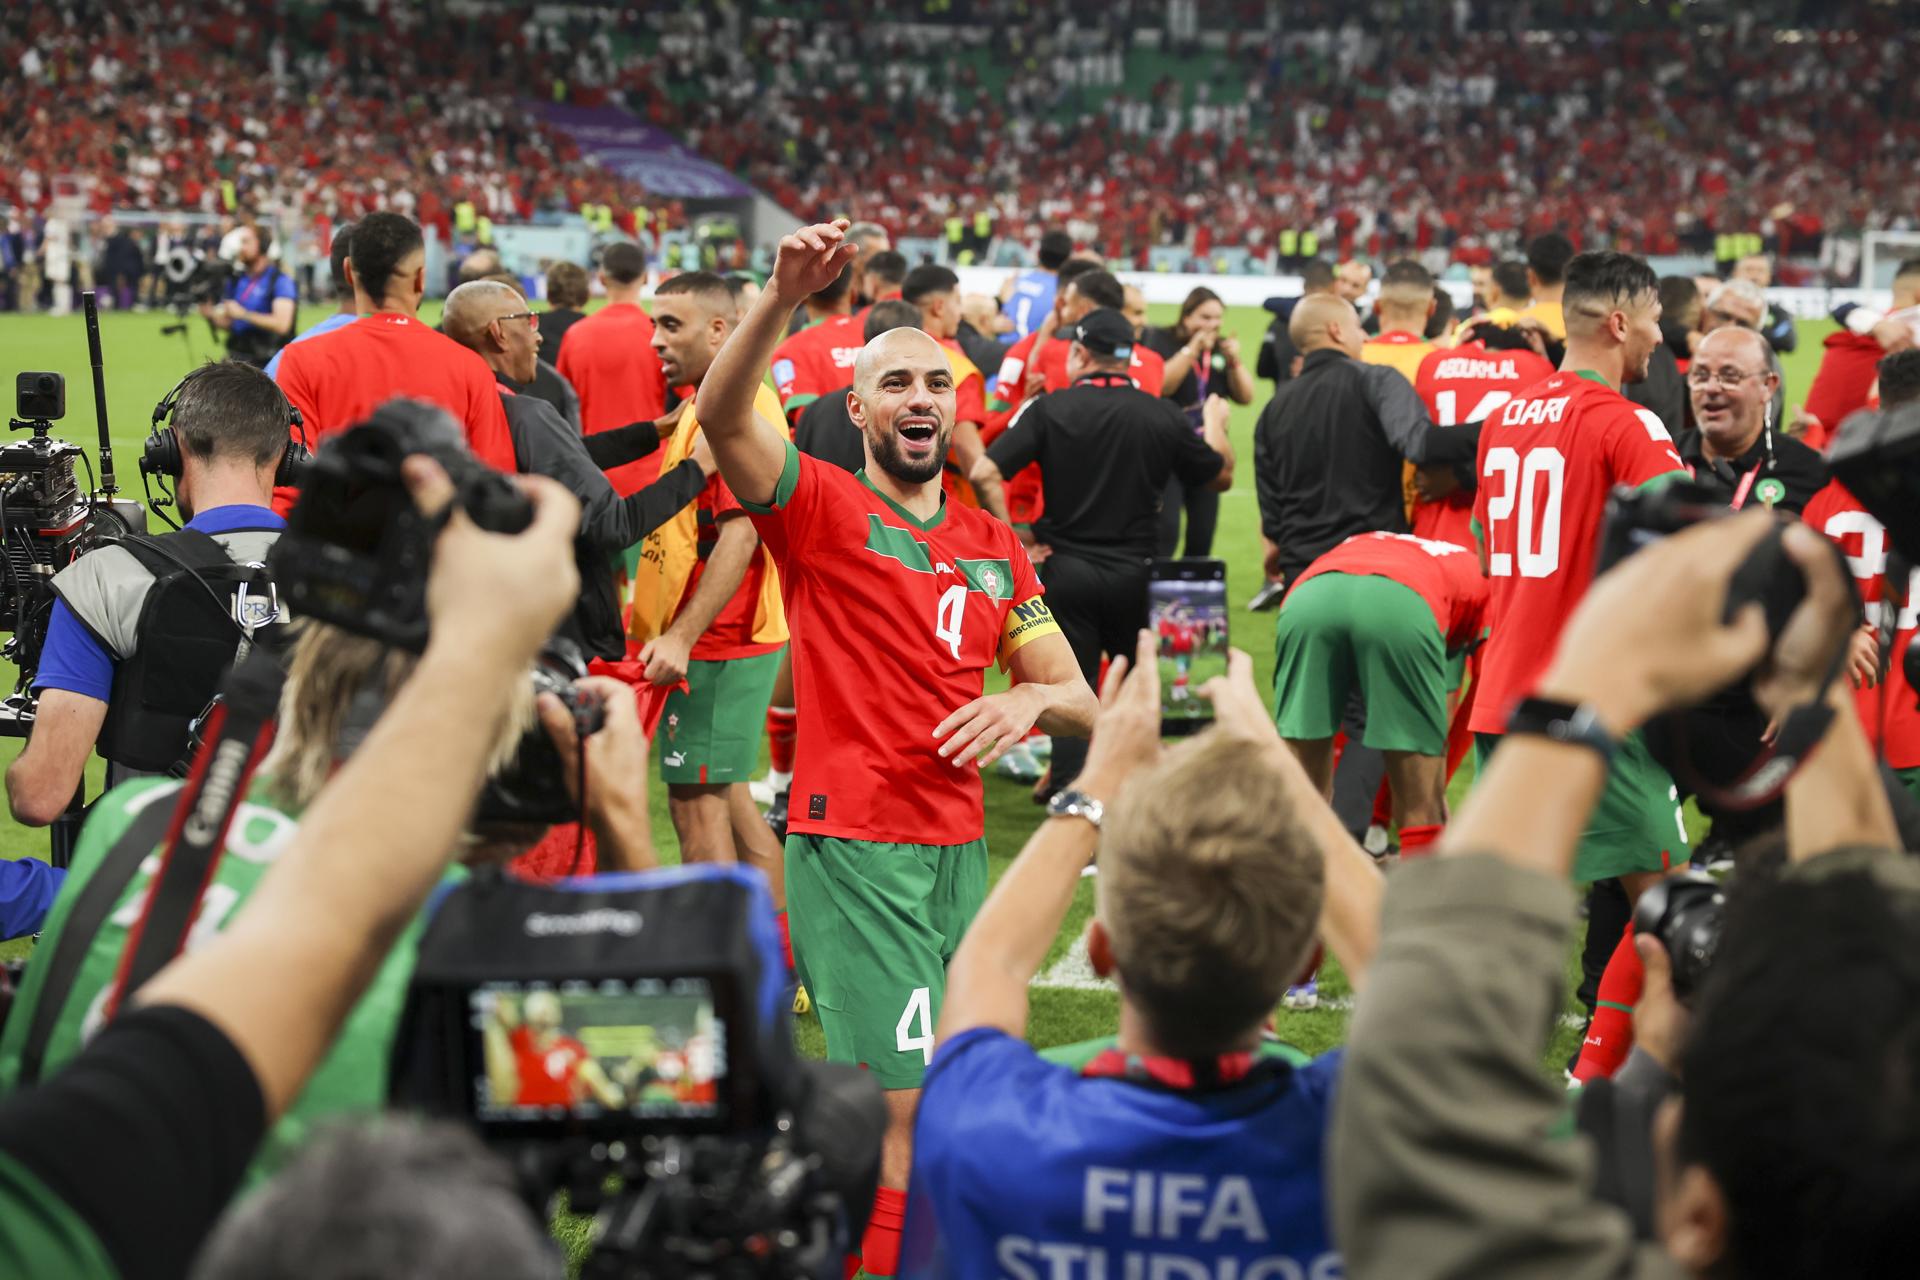 Jugadores de la Selección de Marruecos tras el triunfo sobre Portugal. Foto: Agencia EFE